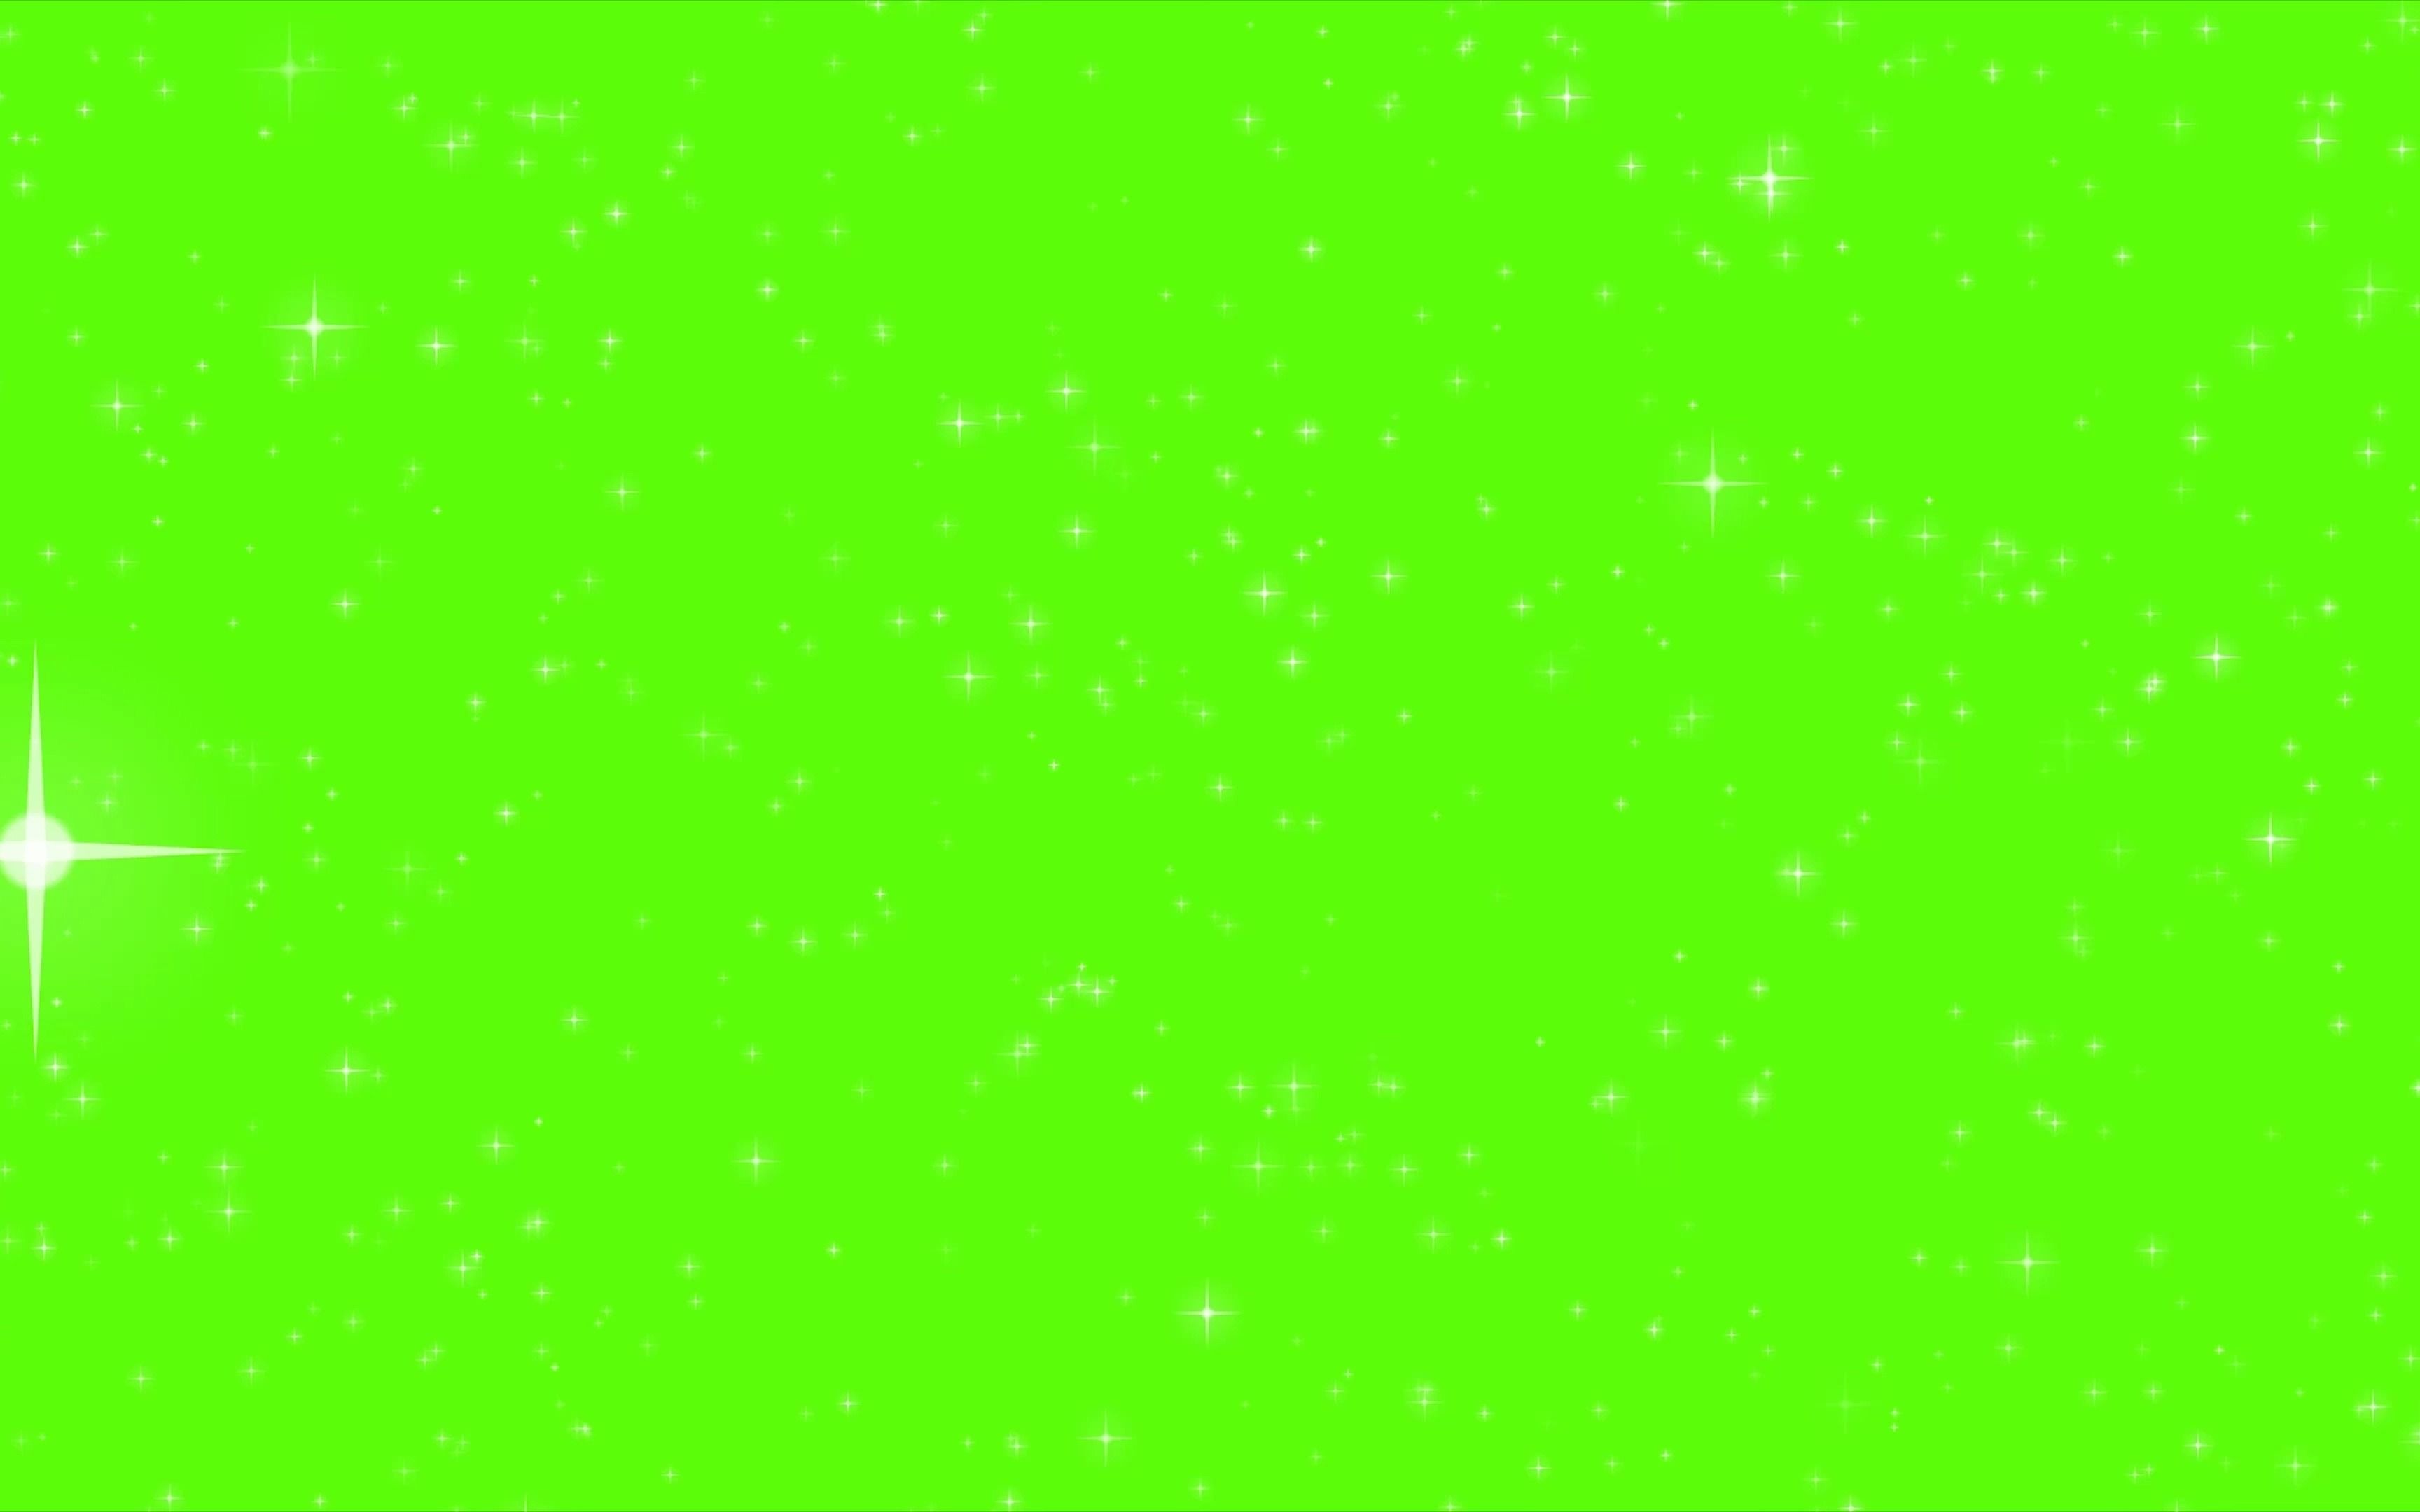 【绿幕素材】新年2021年星星发光绿屏绿幕素材免费无水印自取 2160 4k 哔哩哔哩 ゜ ゜つロ 干杯~ Bilibili 3907